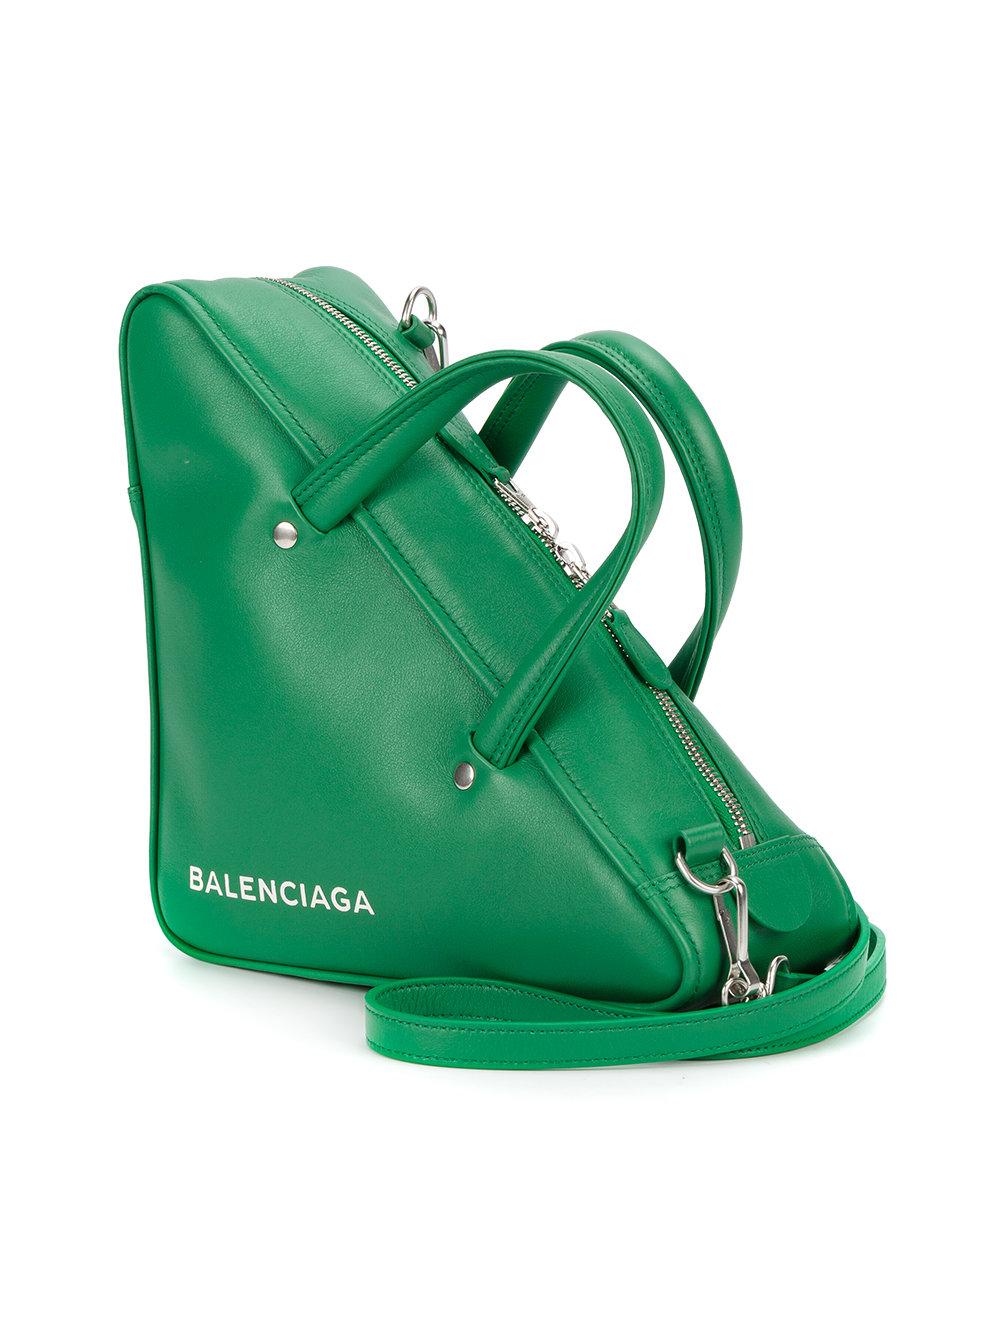 Balenciaga Triangle Shoulder Bag in Green | Lyst